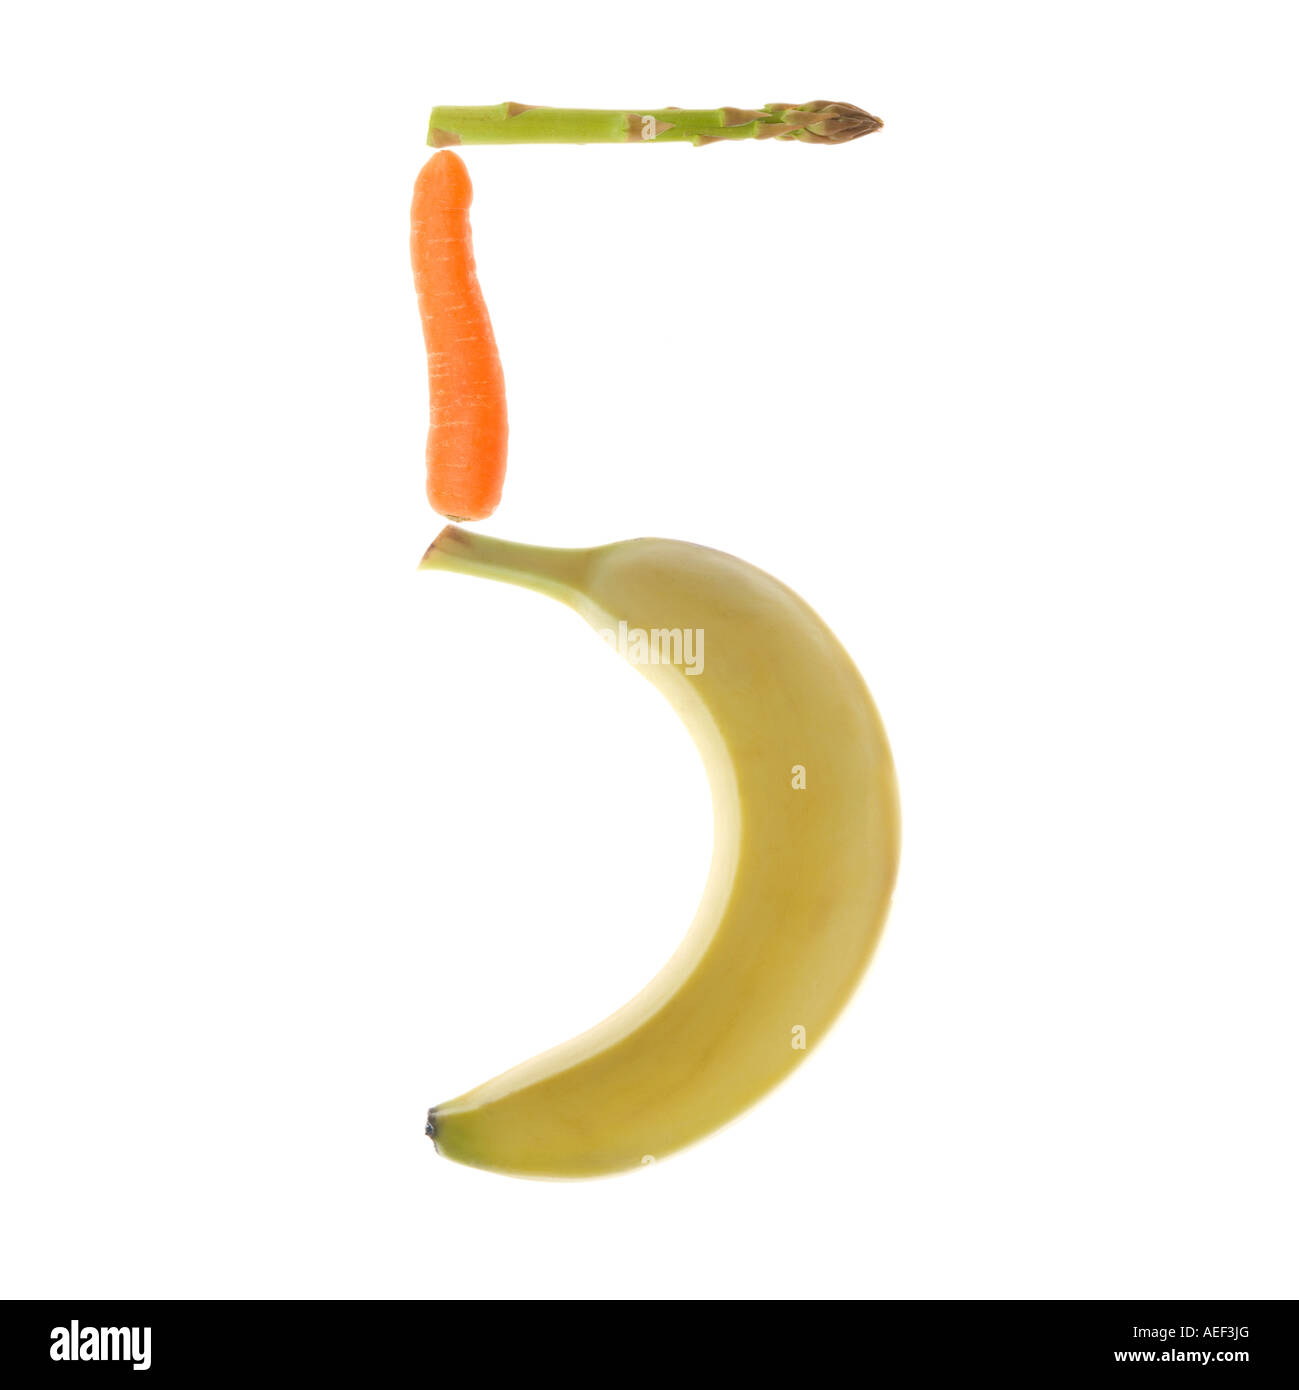 Die Zahl 5 auf einem reinen weißen Hintergrund mit Bananen, Karotten und Spargel. Stockfoto